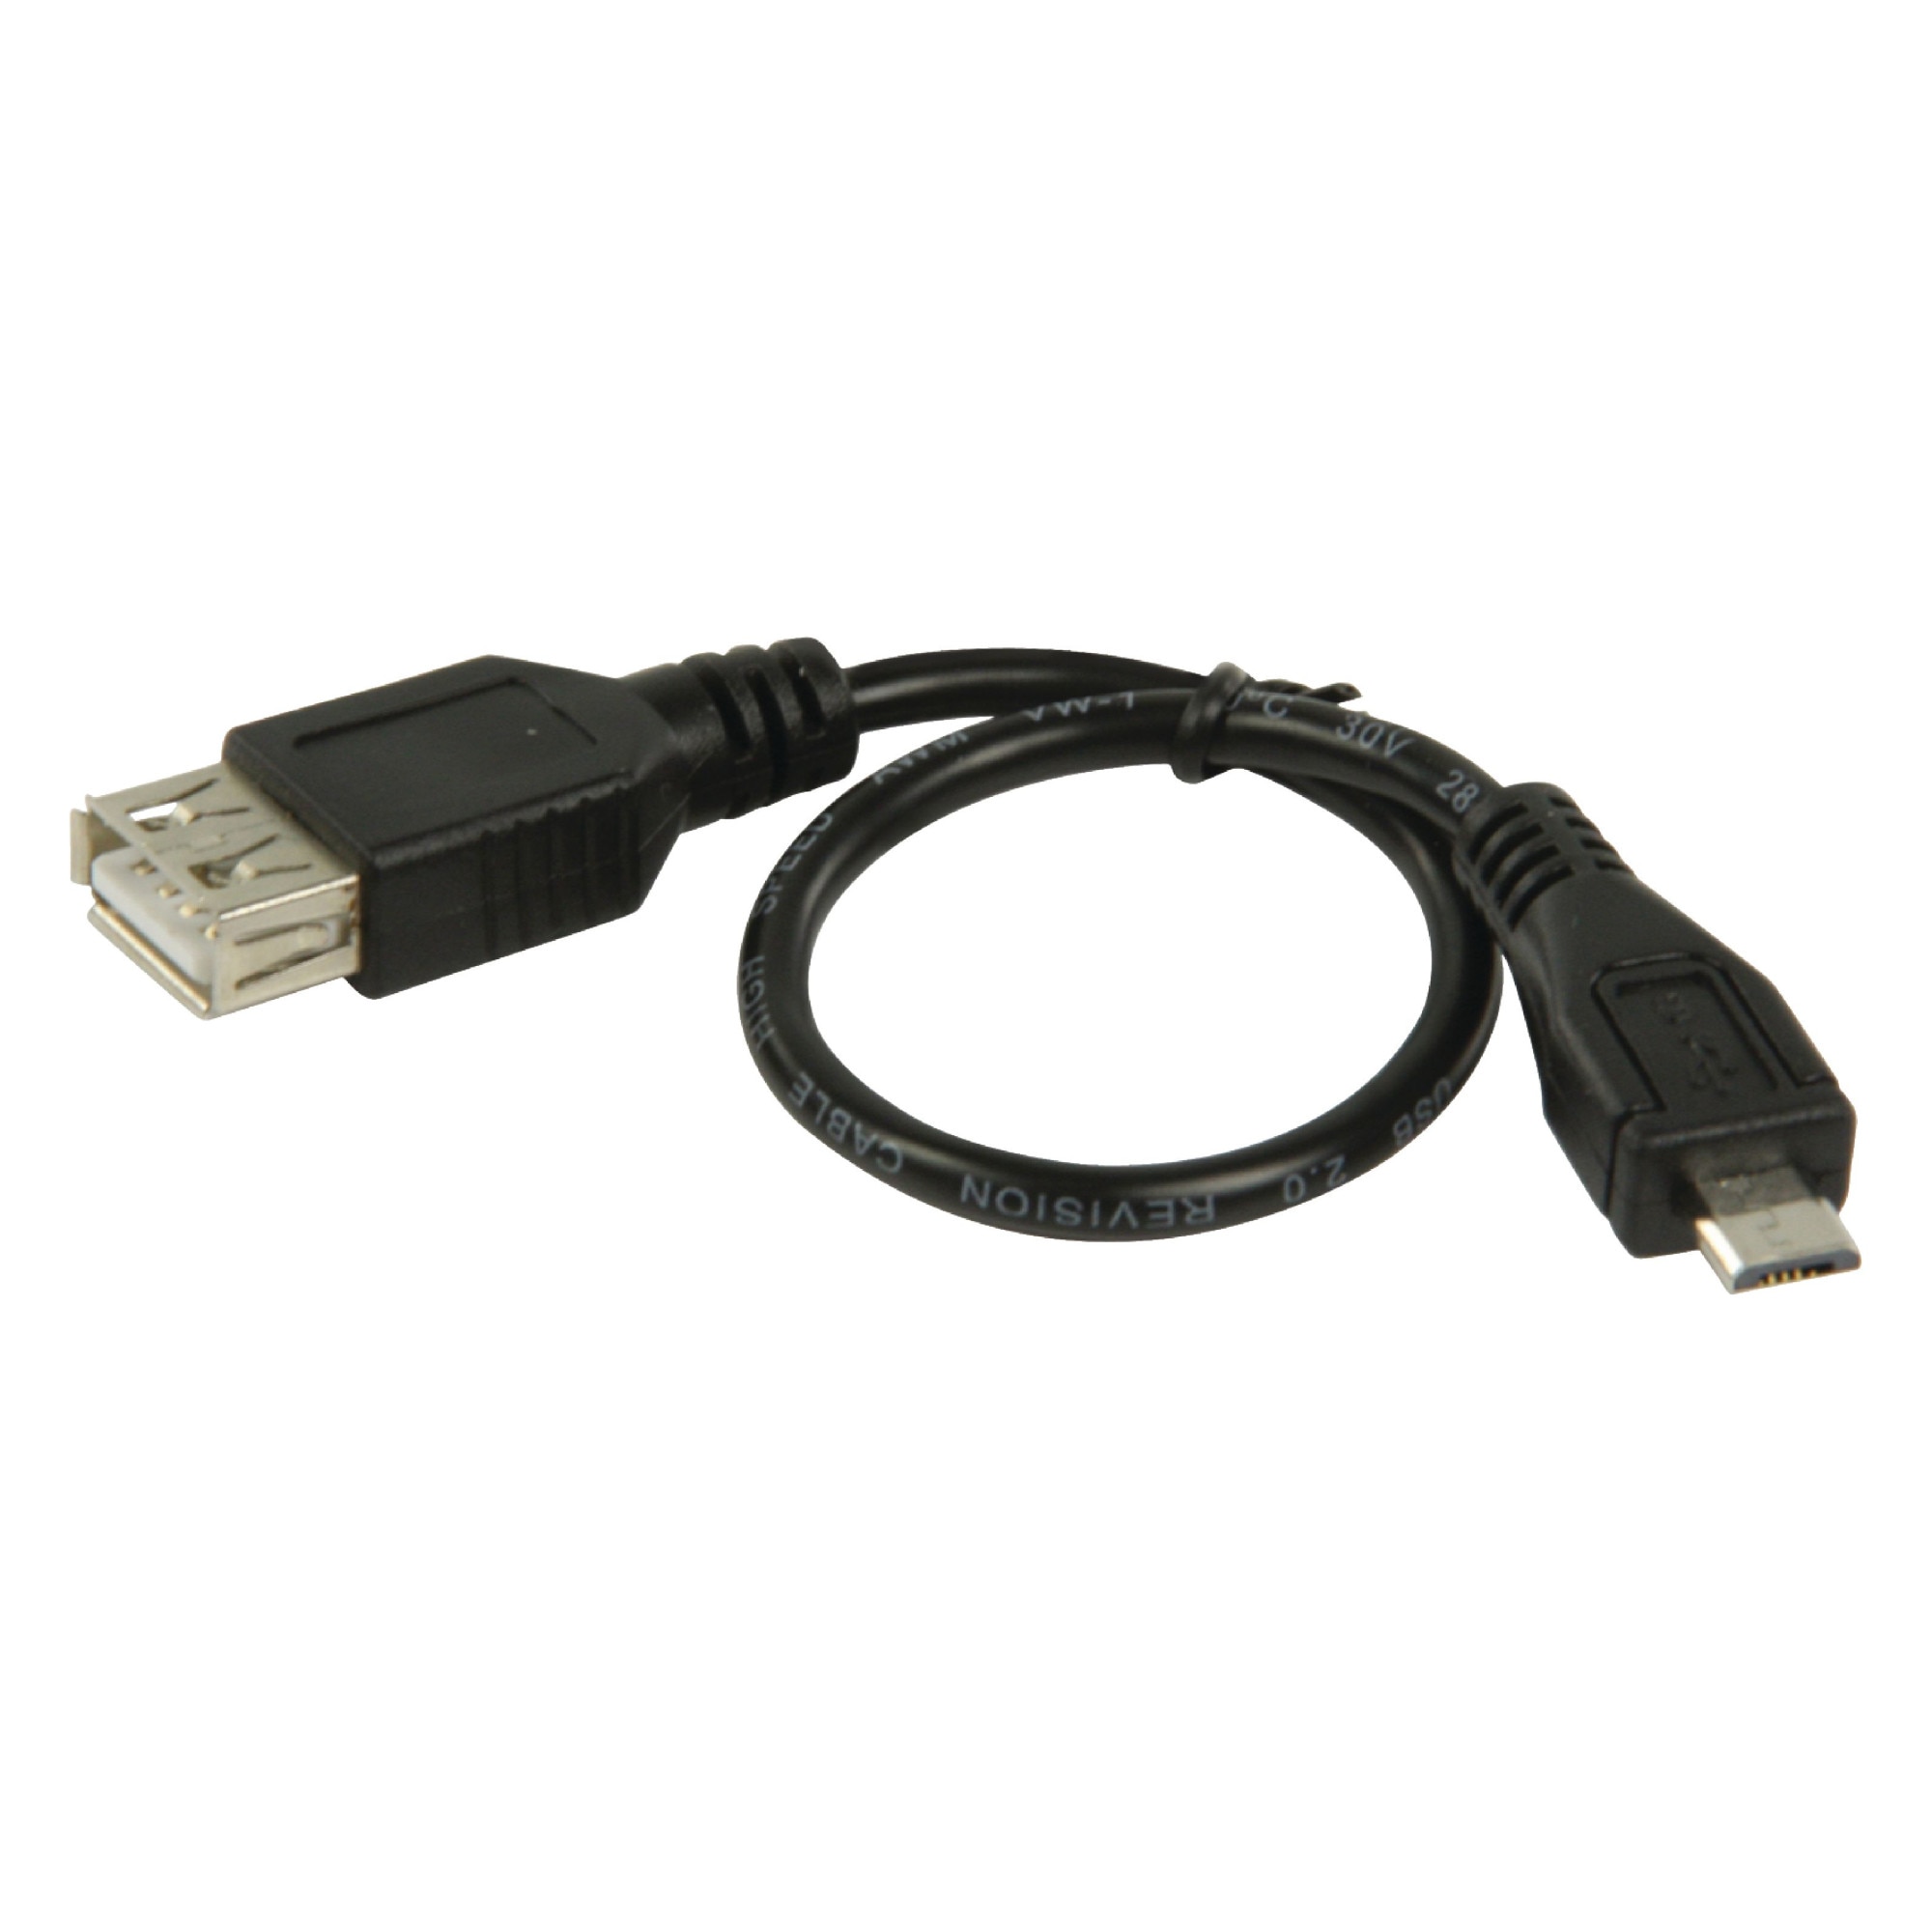 Usb вилка розетка. Перех. Шт. Micro USB A- ГН. USB A - OTG /18-1173. Разветвитель микро USB на 2 микро USB мама. USB кабель угловой мама. Разветвитель 2 Micro USB мама на Micro USB папа.